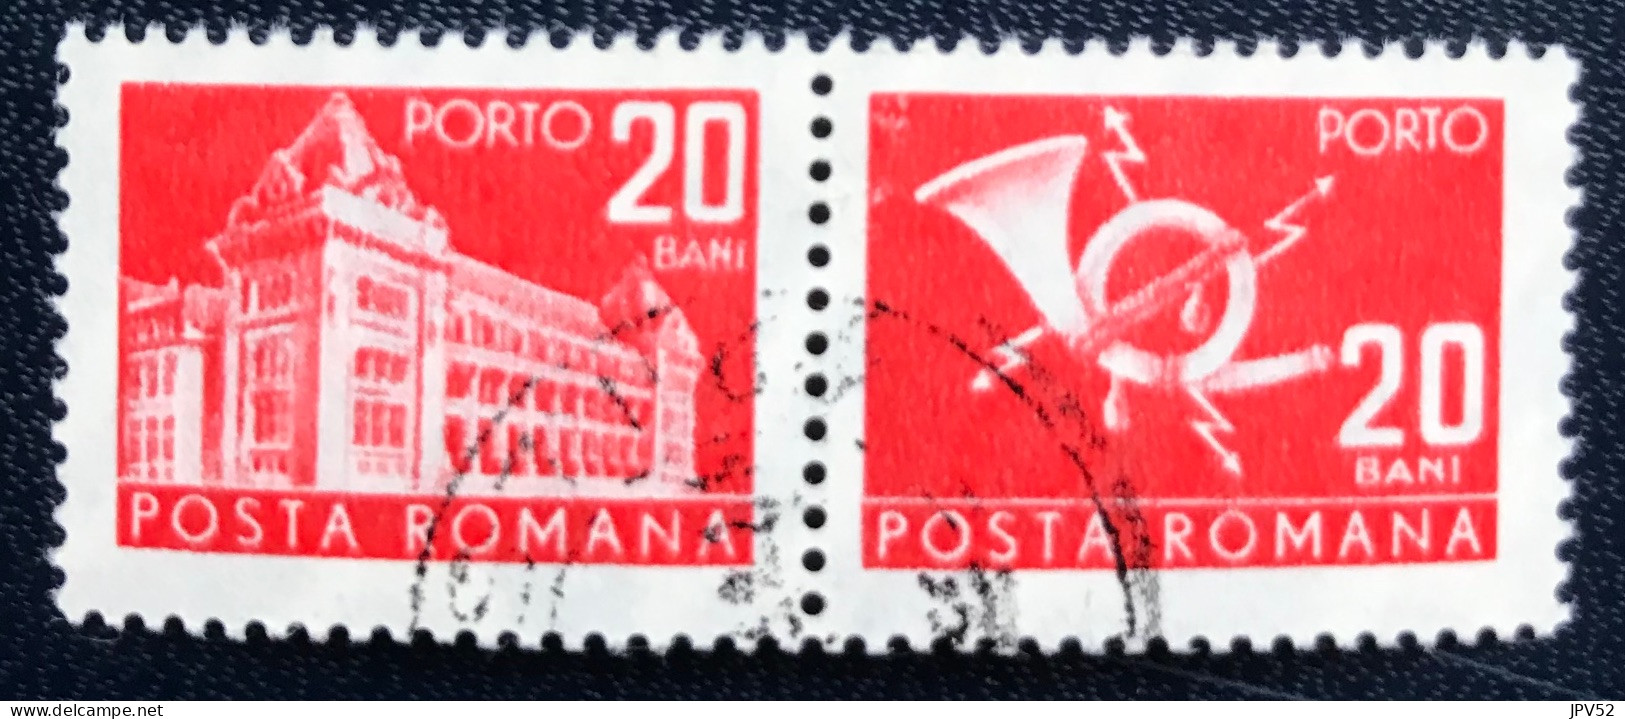 Romana - Roemenië - C14/54 - 1970 - (°)used - Michel 116 - Postkantoor & Posthoorn & Bliksem - Postage Due